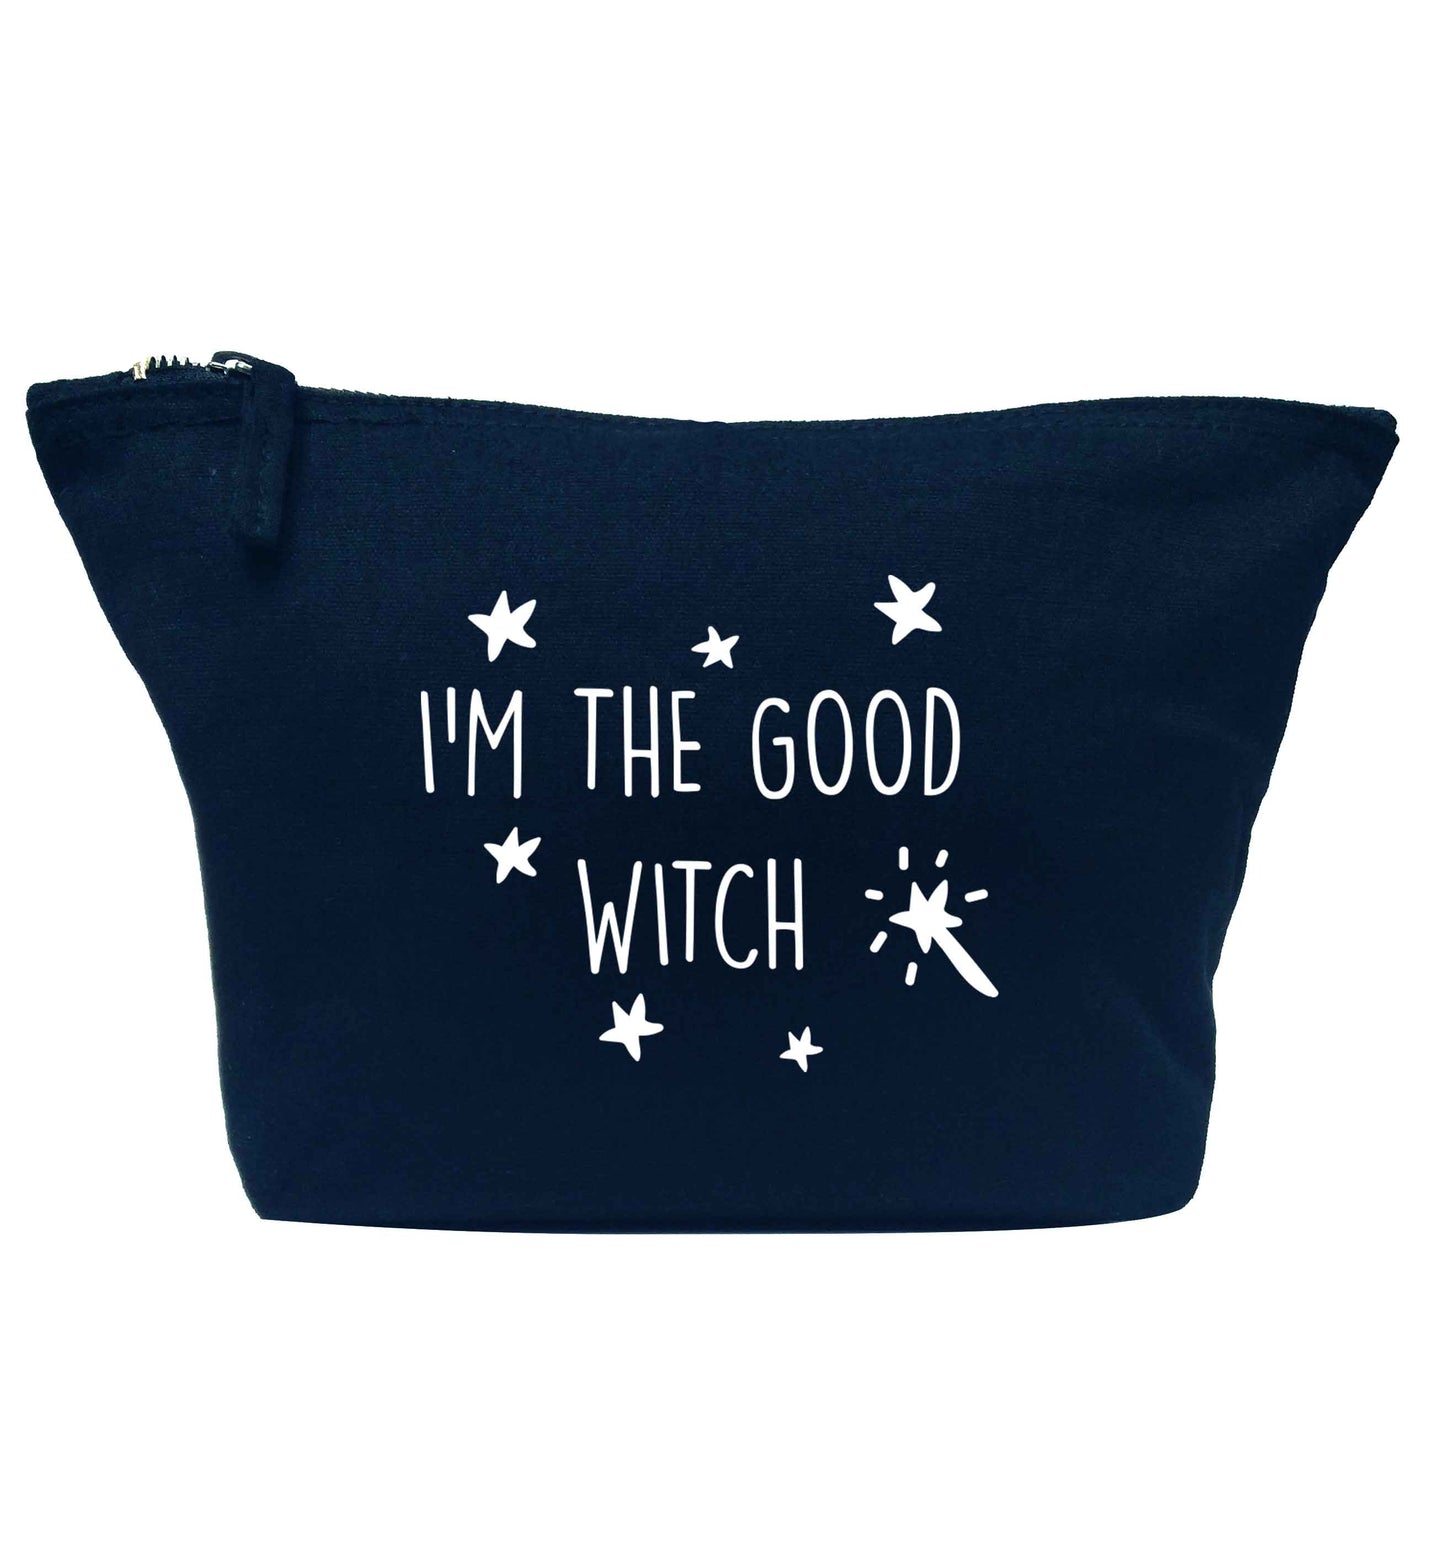 Good witch navy makeup bag